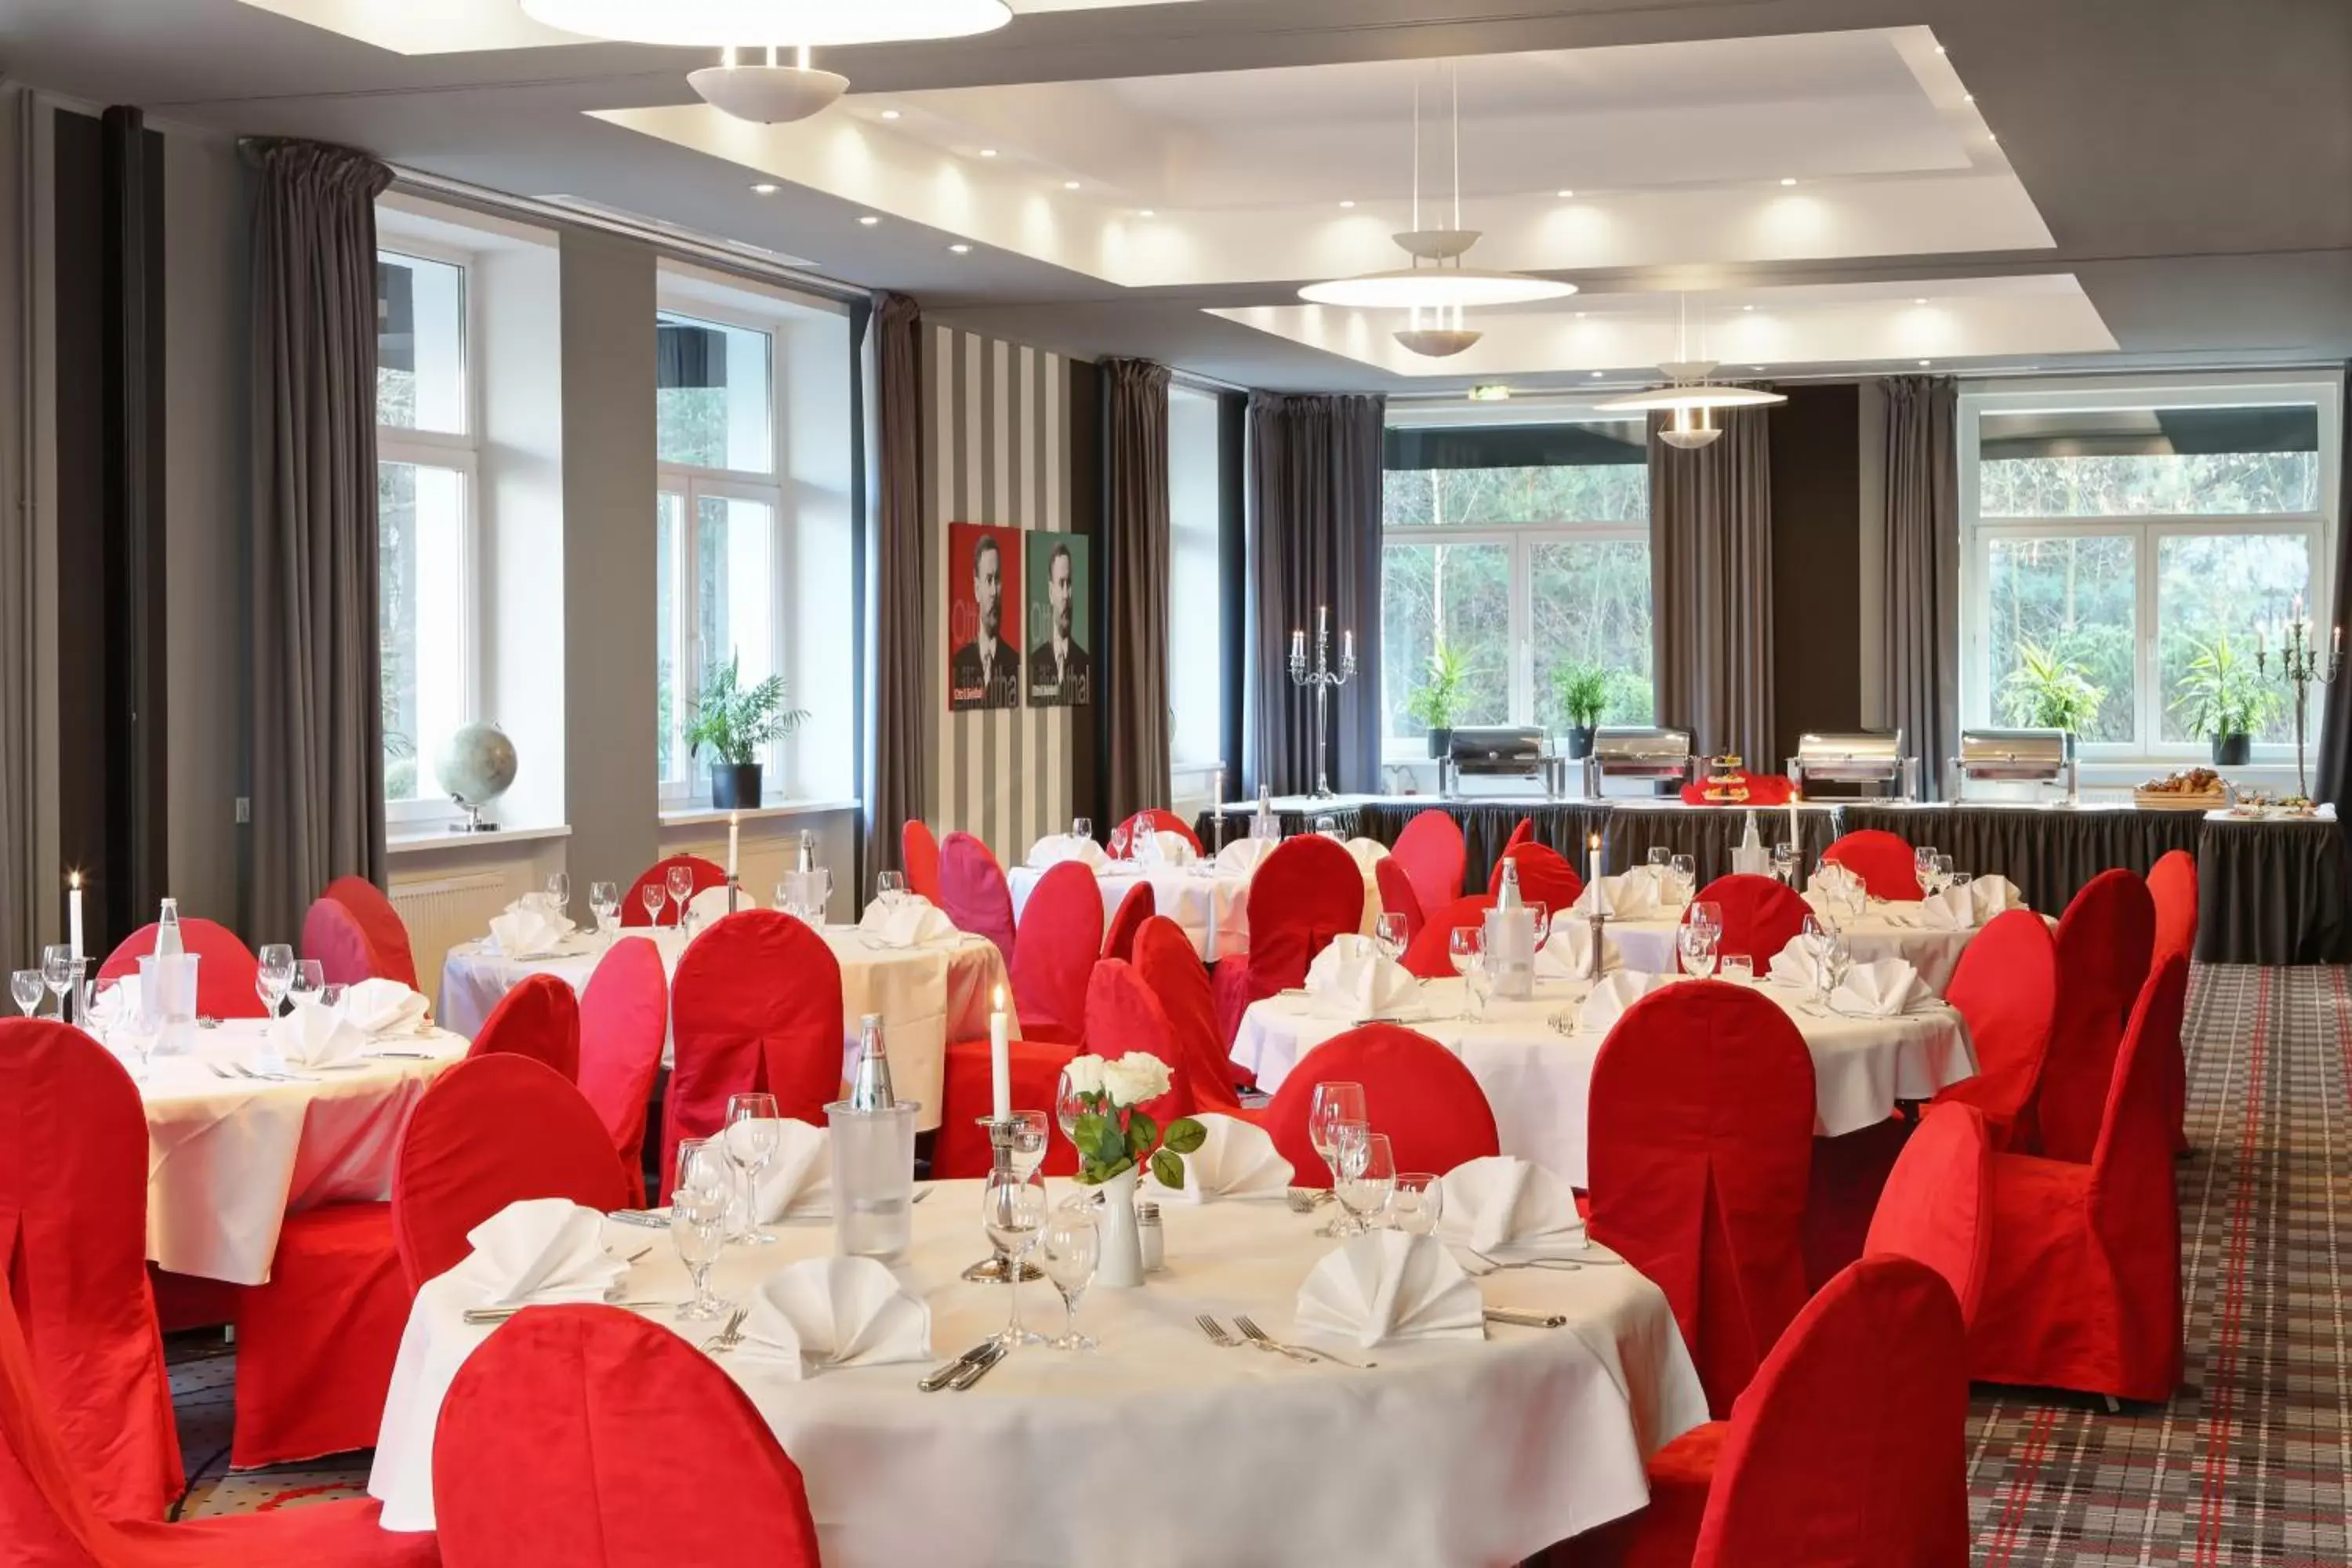 Banquet/Function facilities, Banquet Facilities in Grünau Hotel